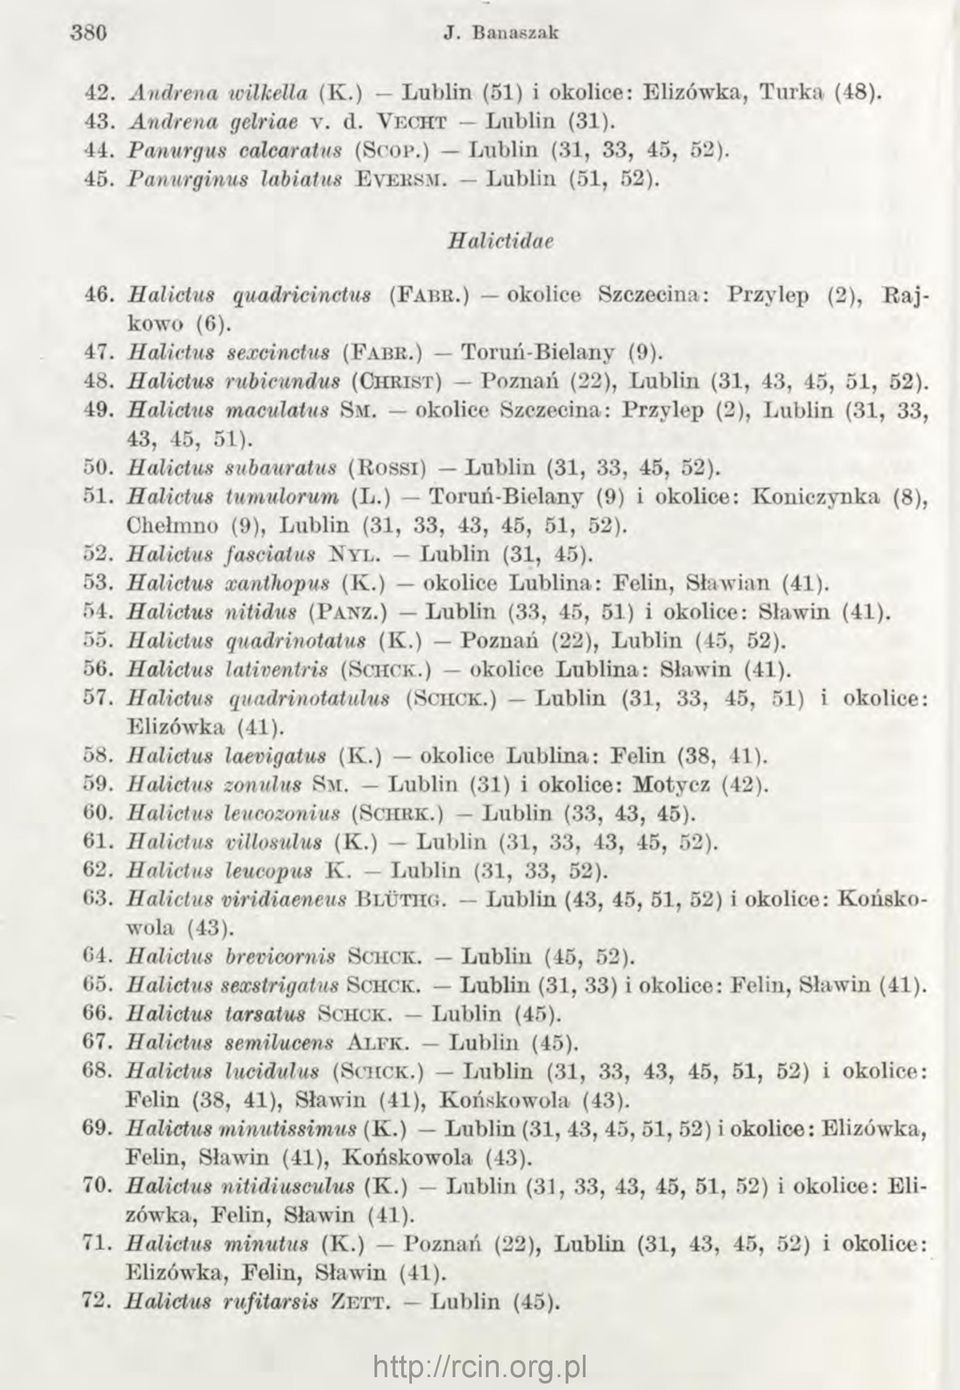 ) Toruń-Bielany (9). 48. Halictus rubicundus (C h r i s t ) Poznań (22), Lublin (31, 43, 45, 51, 52). 49. Halictus maculatus S m. okolice Szczecina: Przylep (2), Lublin (31, 33, 43, 45, 51). 50.